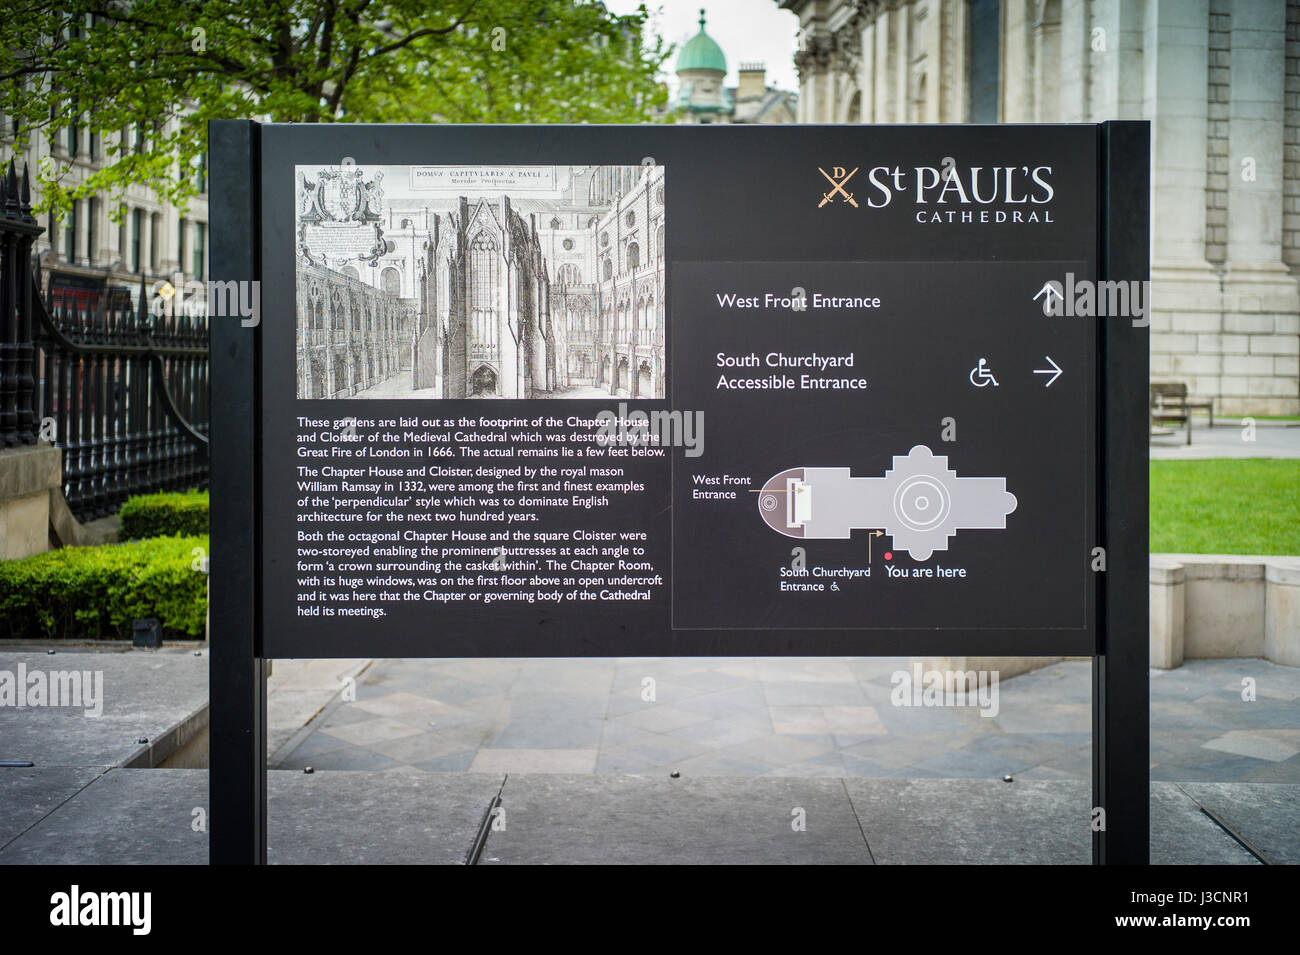 Signo de la información para el Sur Camposanto jardines de la Catedral de San Pablo en Londres, Reino Unido. Este fue el sitio original de la sala capitular y el claustro. Foto de stock